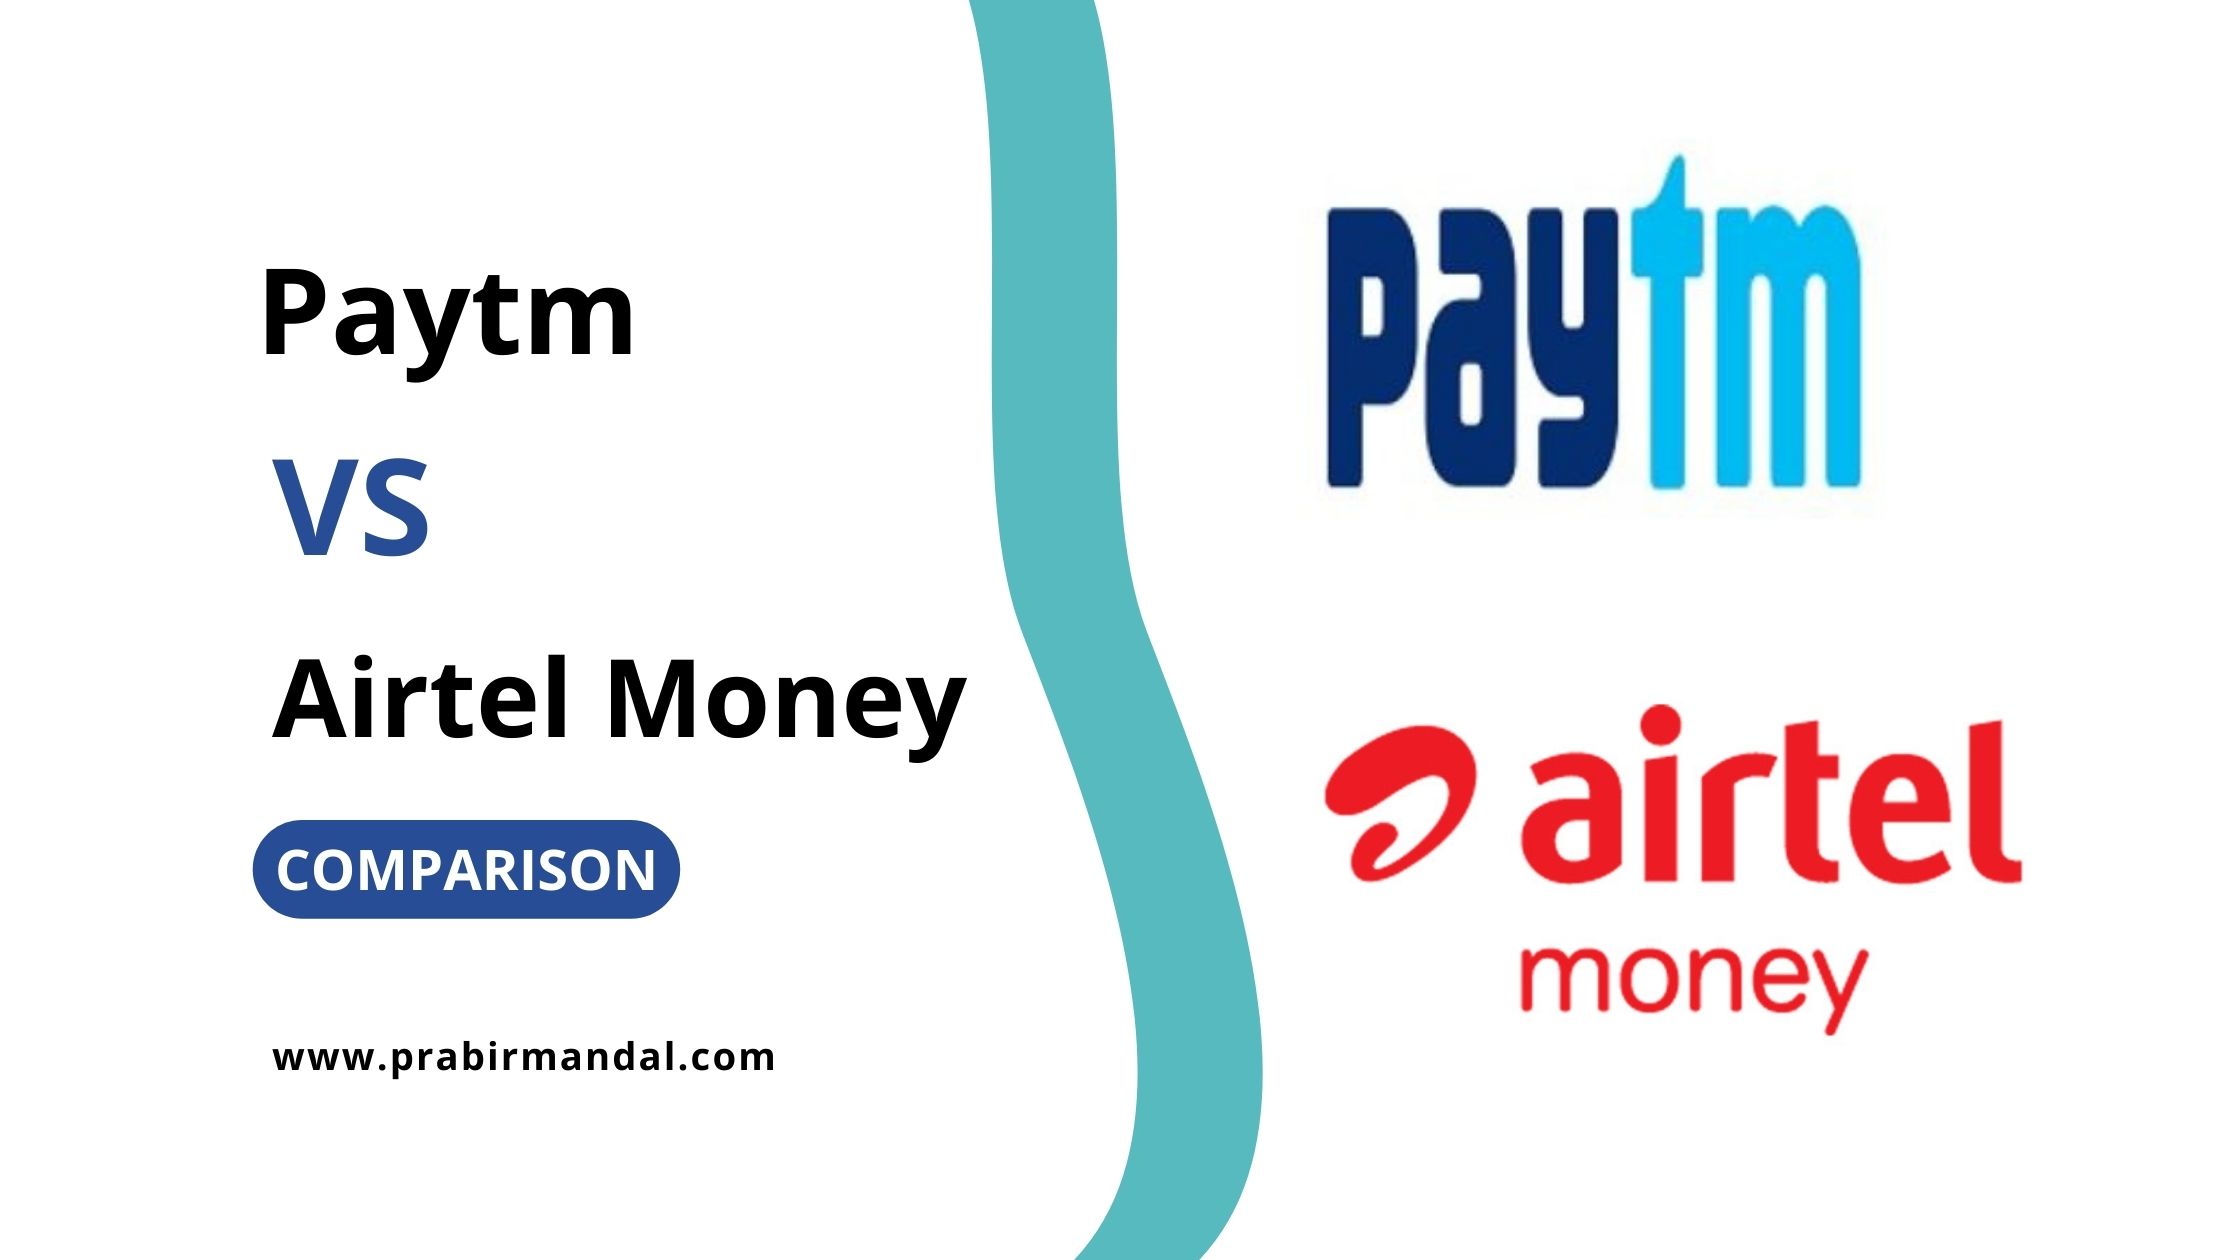 Paytm vs Airtel Money